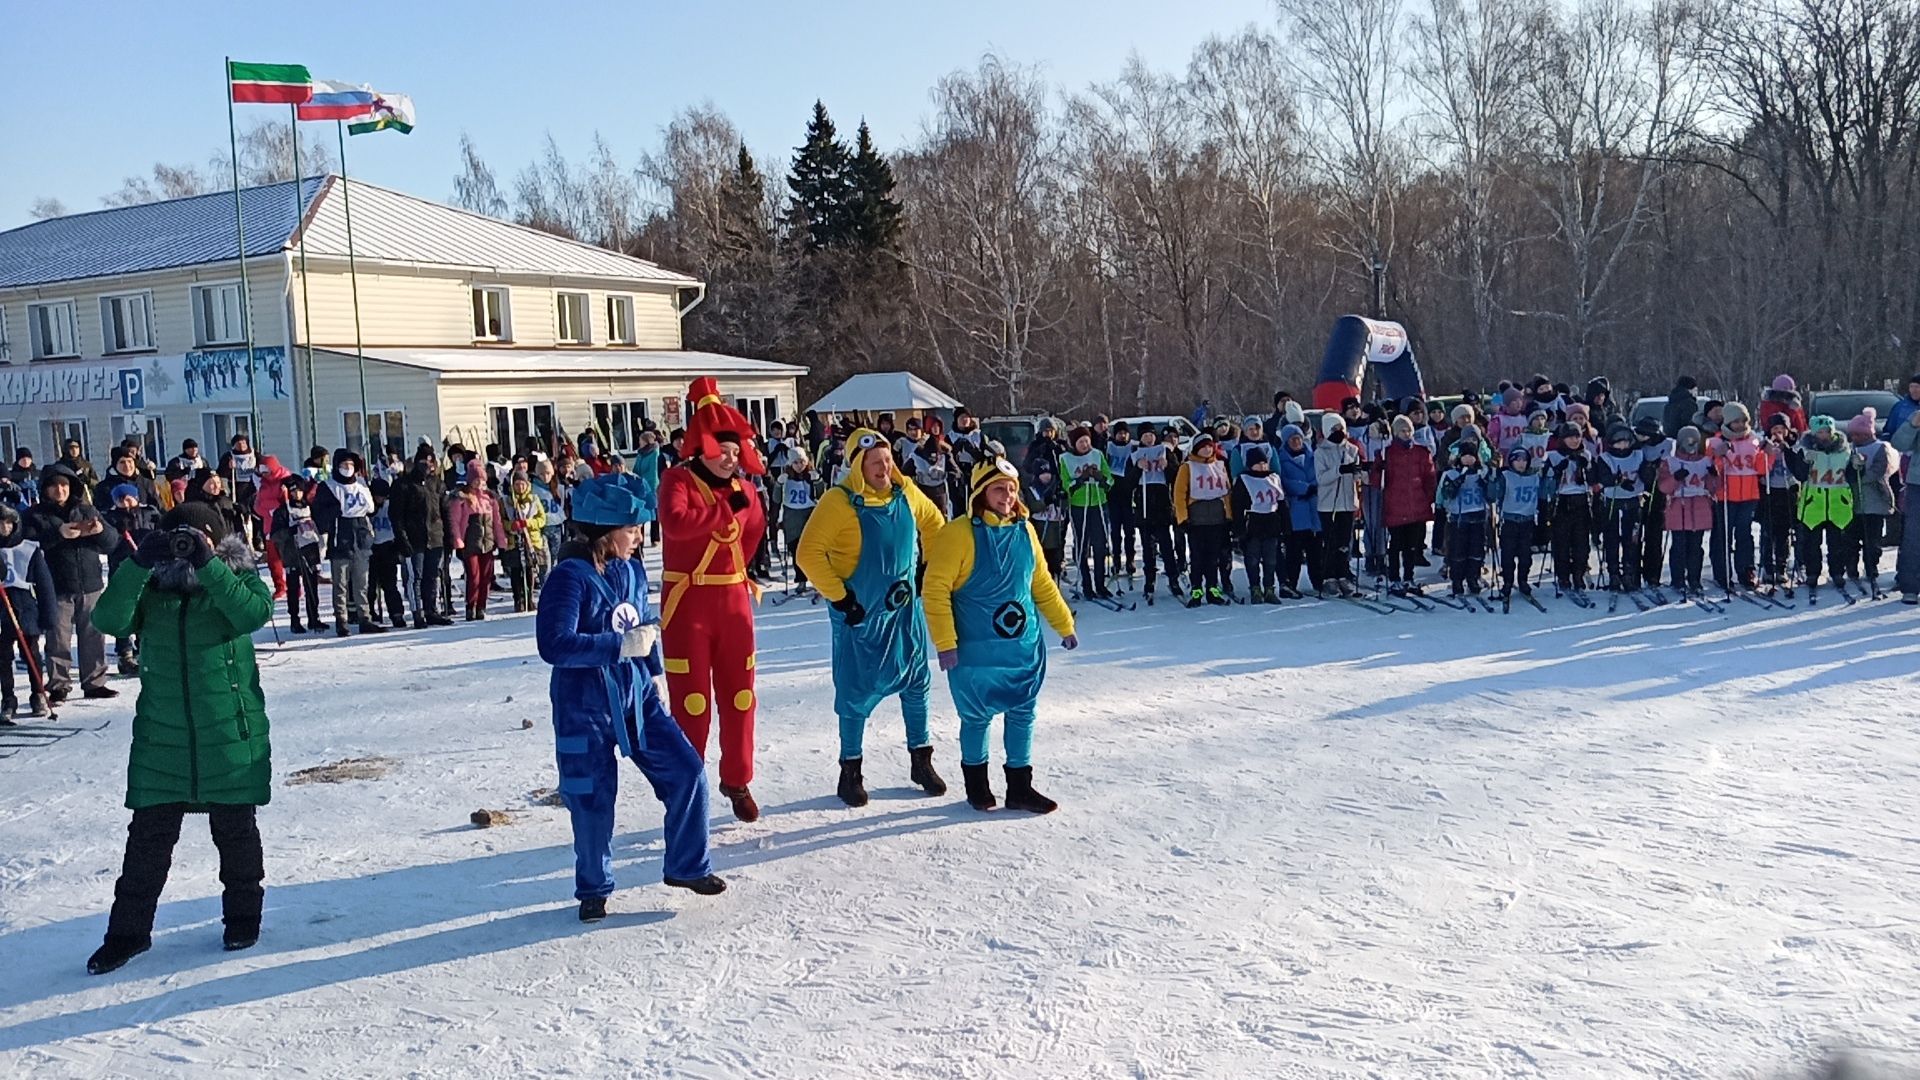 Более трехсот алексеевцев вышло на «Лыжню России-2020»